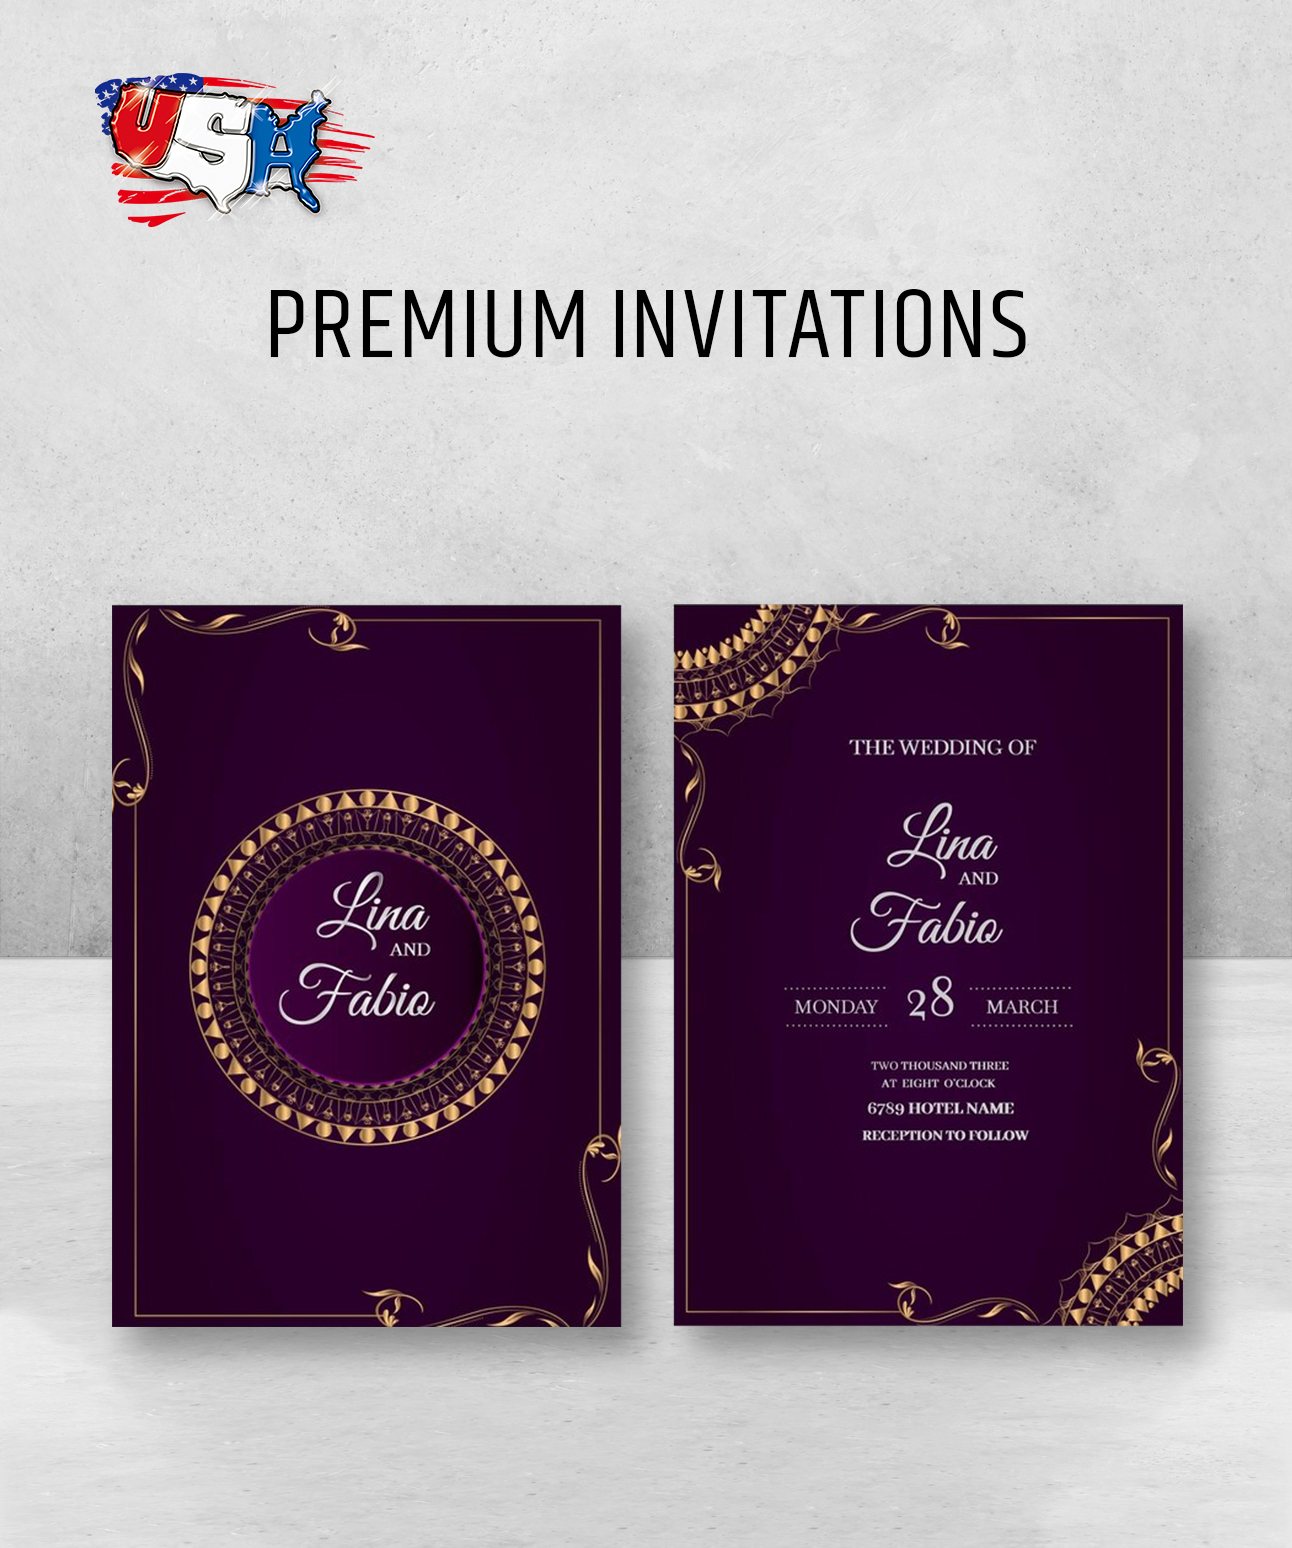 Premium Invitations